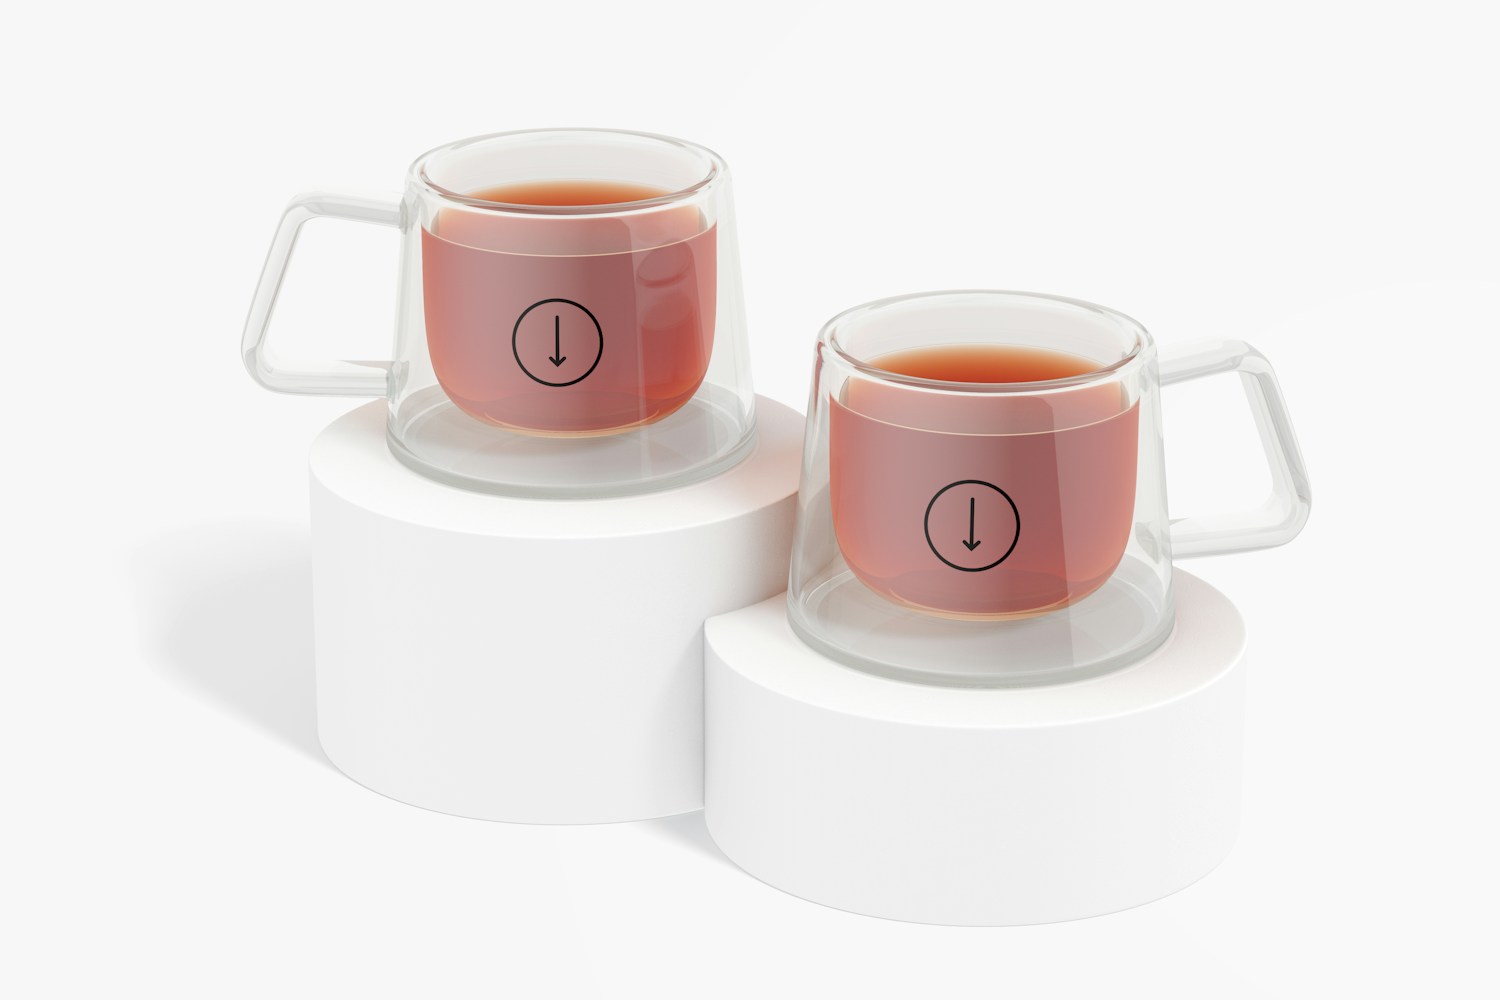 Tea Cups Mockup, on Podiums